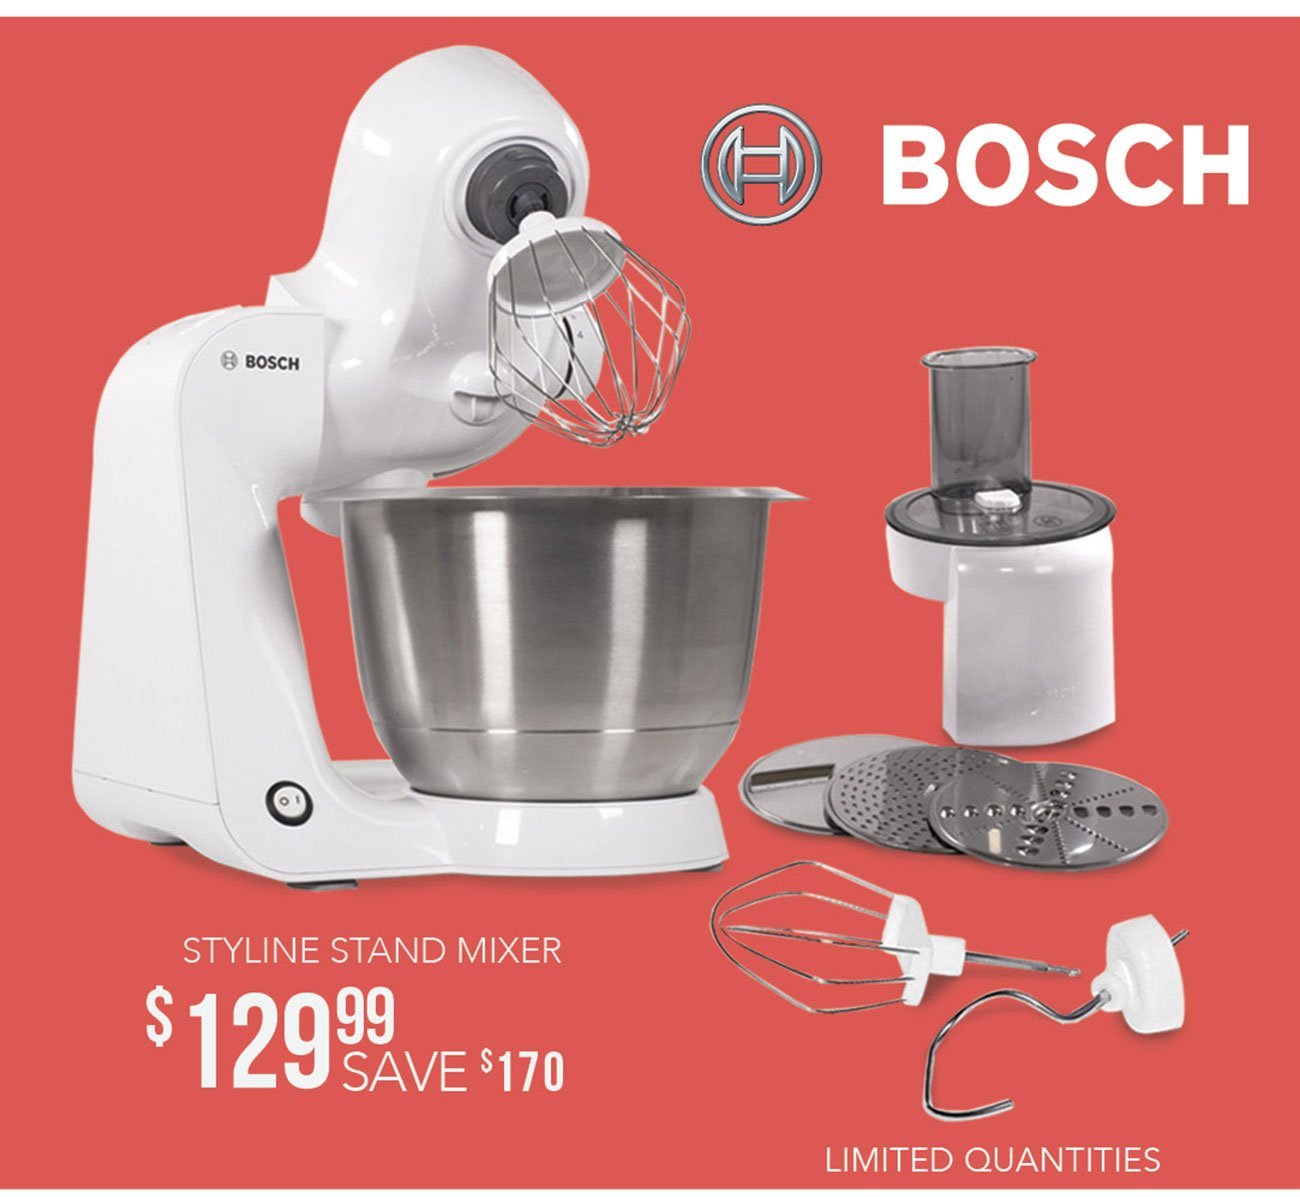 Bosch-Styline-stand-mixer